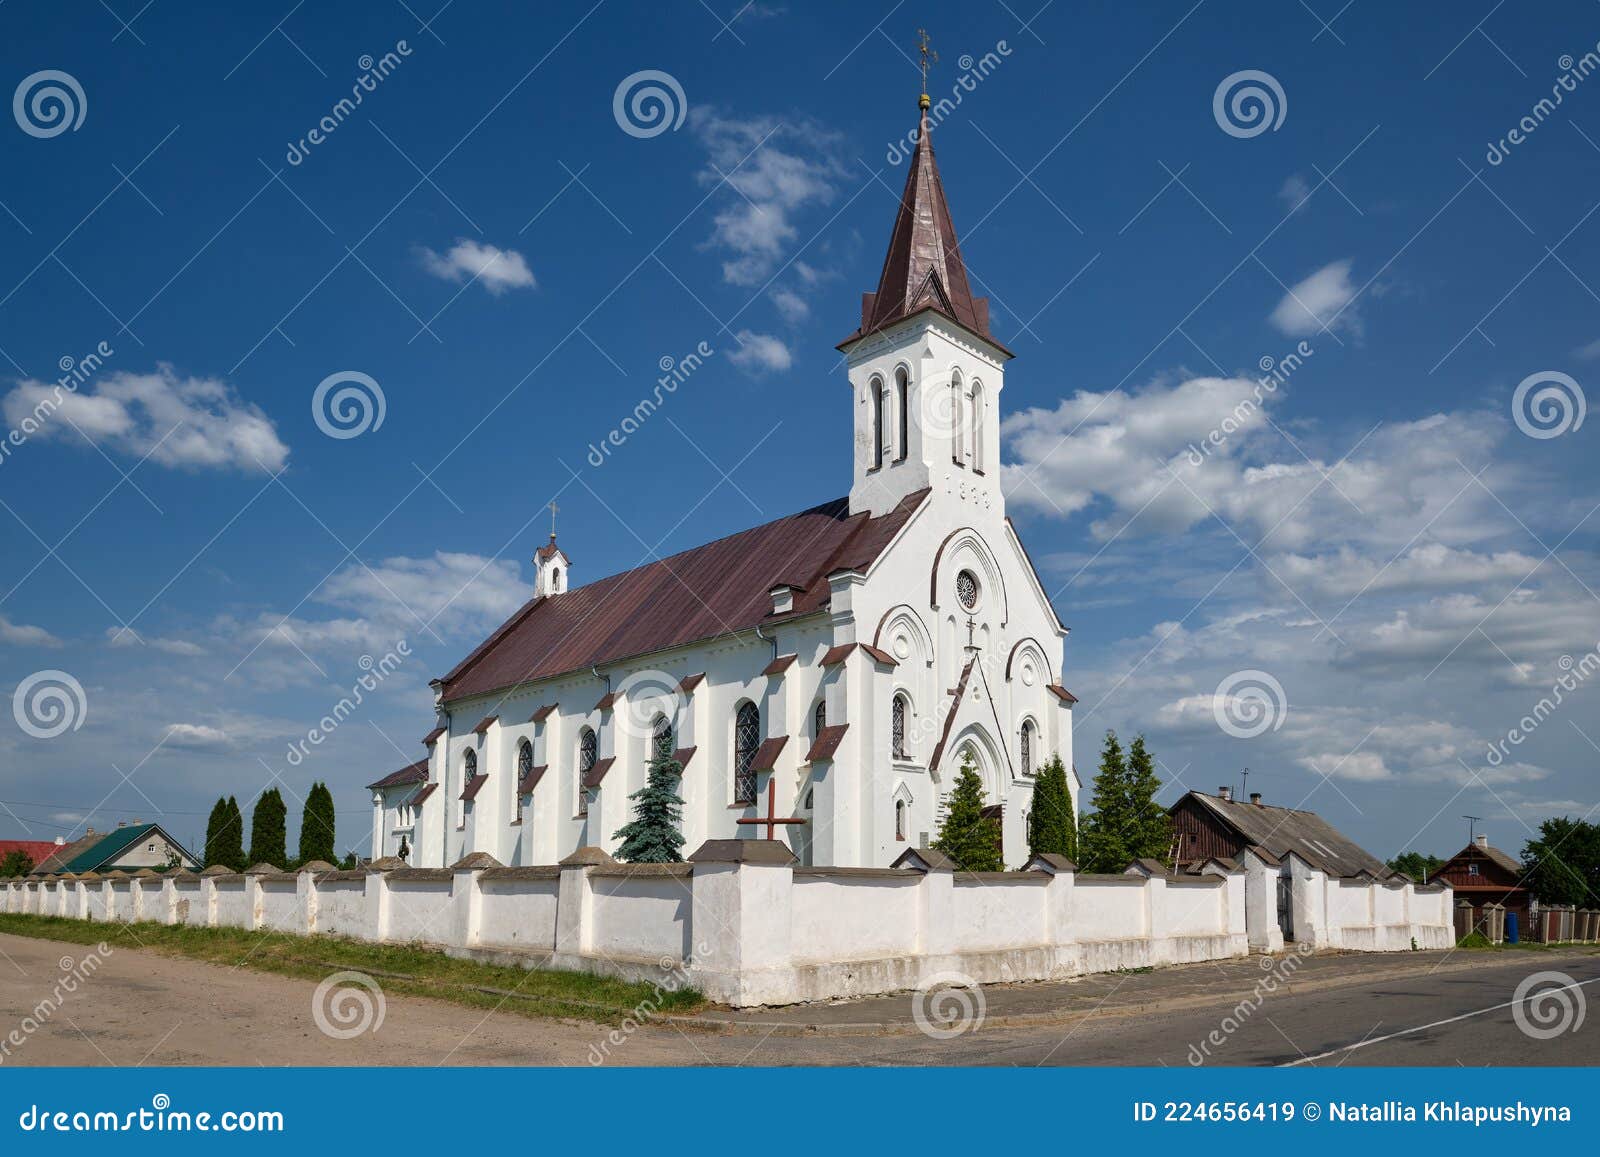 old catholic church of the holy trinity in kossovo. kosava village, brest region, belarus